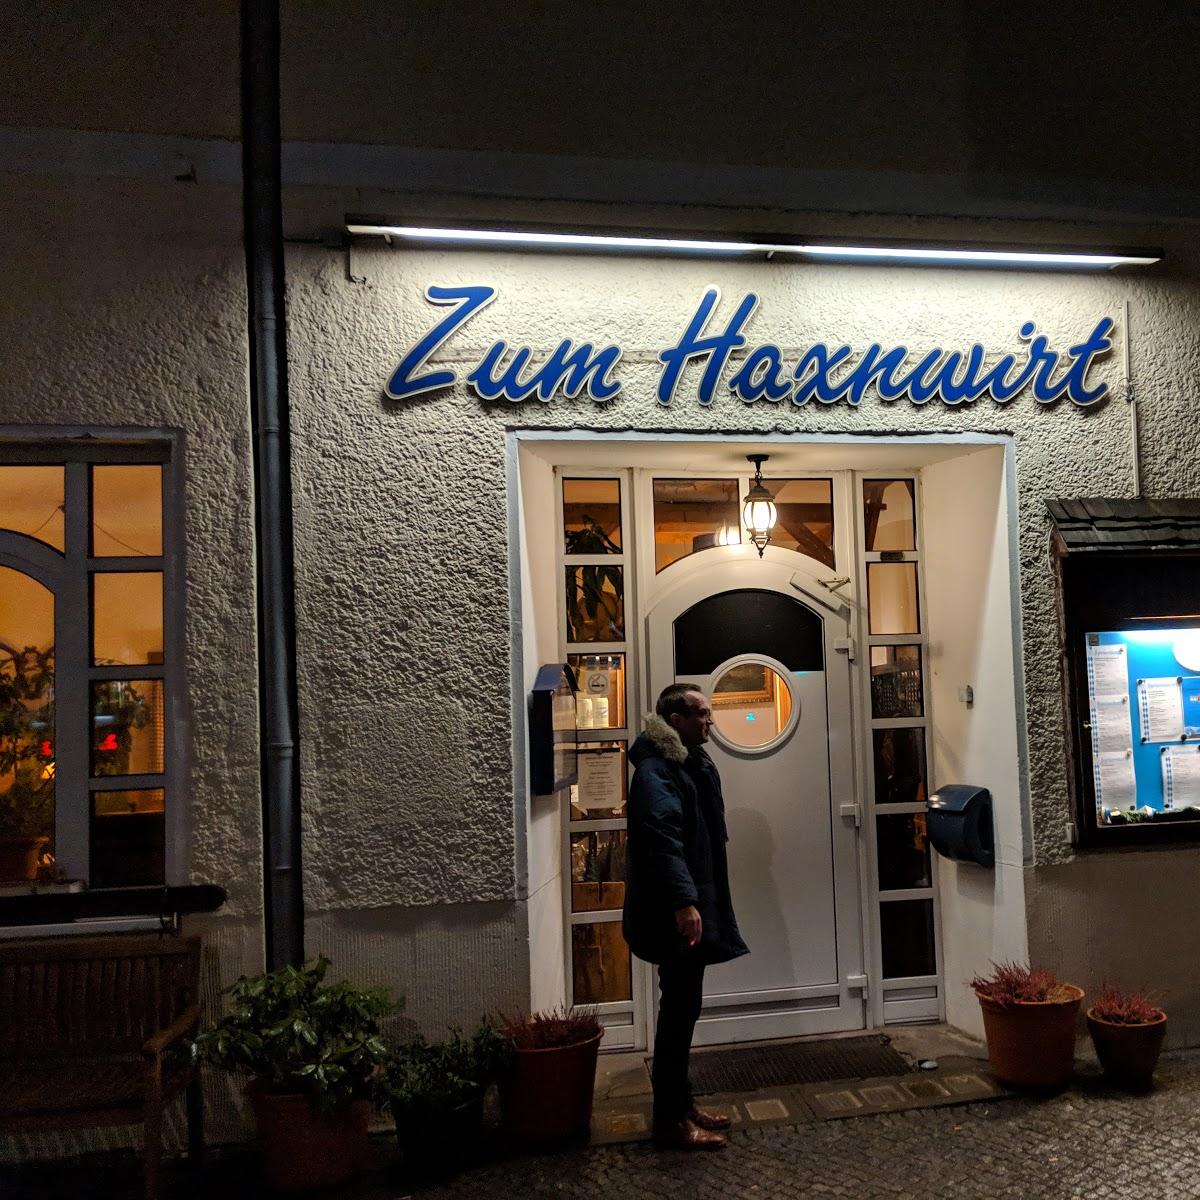 Restaurant "Zum Hax